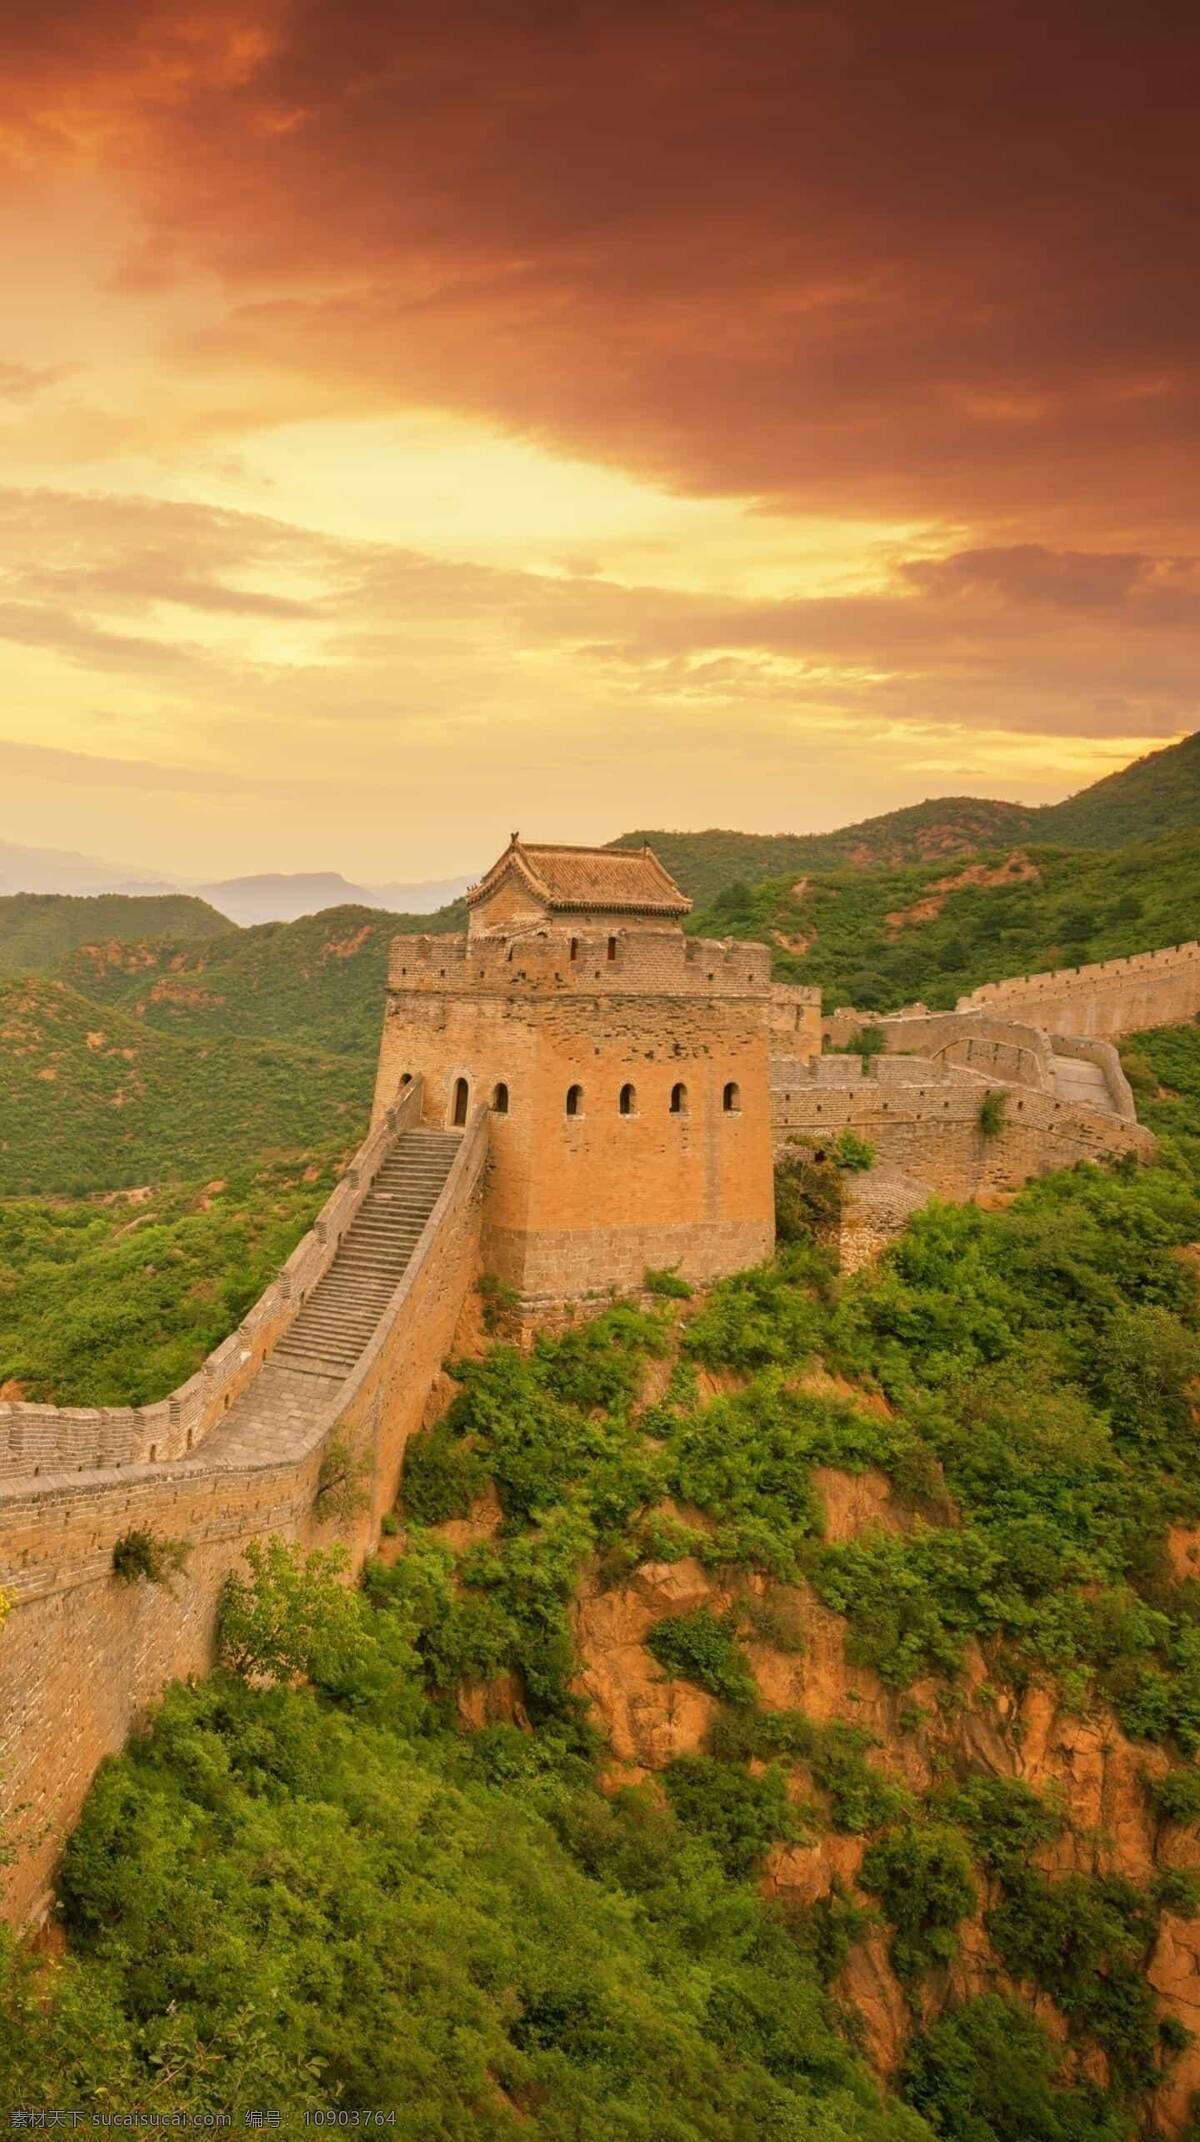 长城图片 长城 建筑 古代建筑 中国 中国建筑 防御 山 山顶 天空 树 绿色